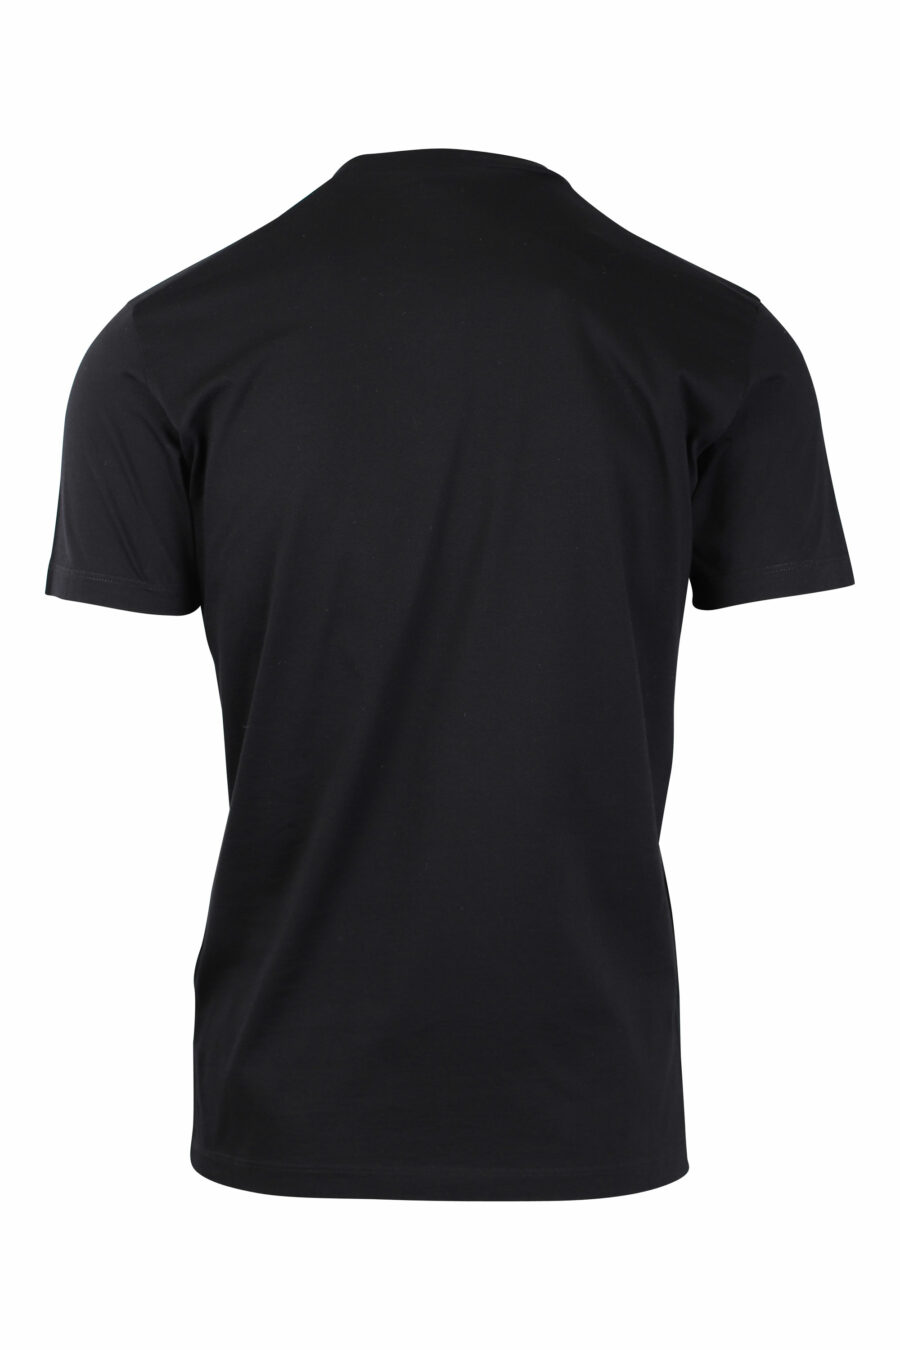 T-shirt preta com estampado de Bob Marley - IMG 1480